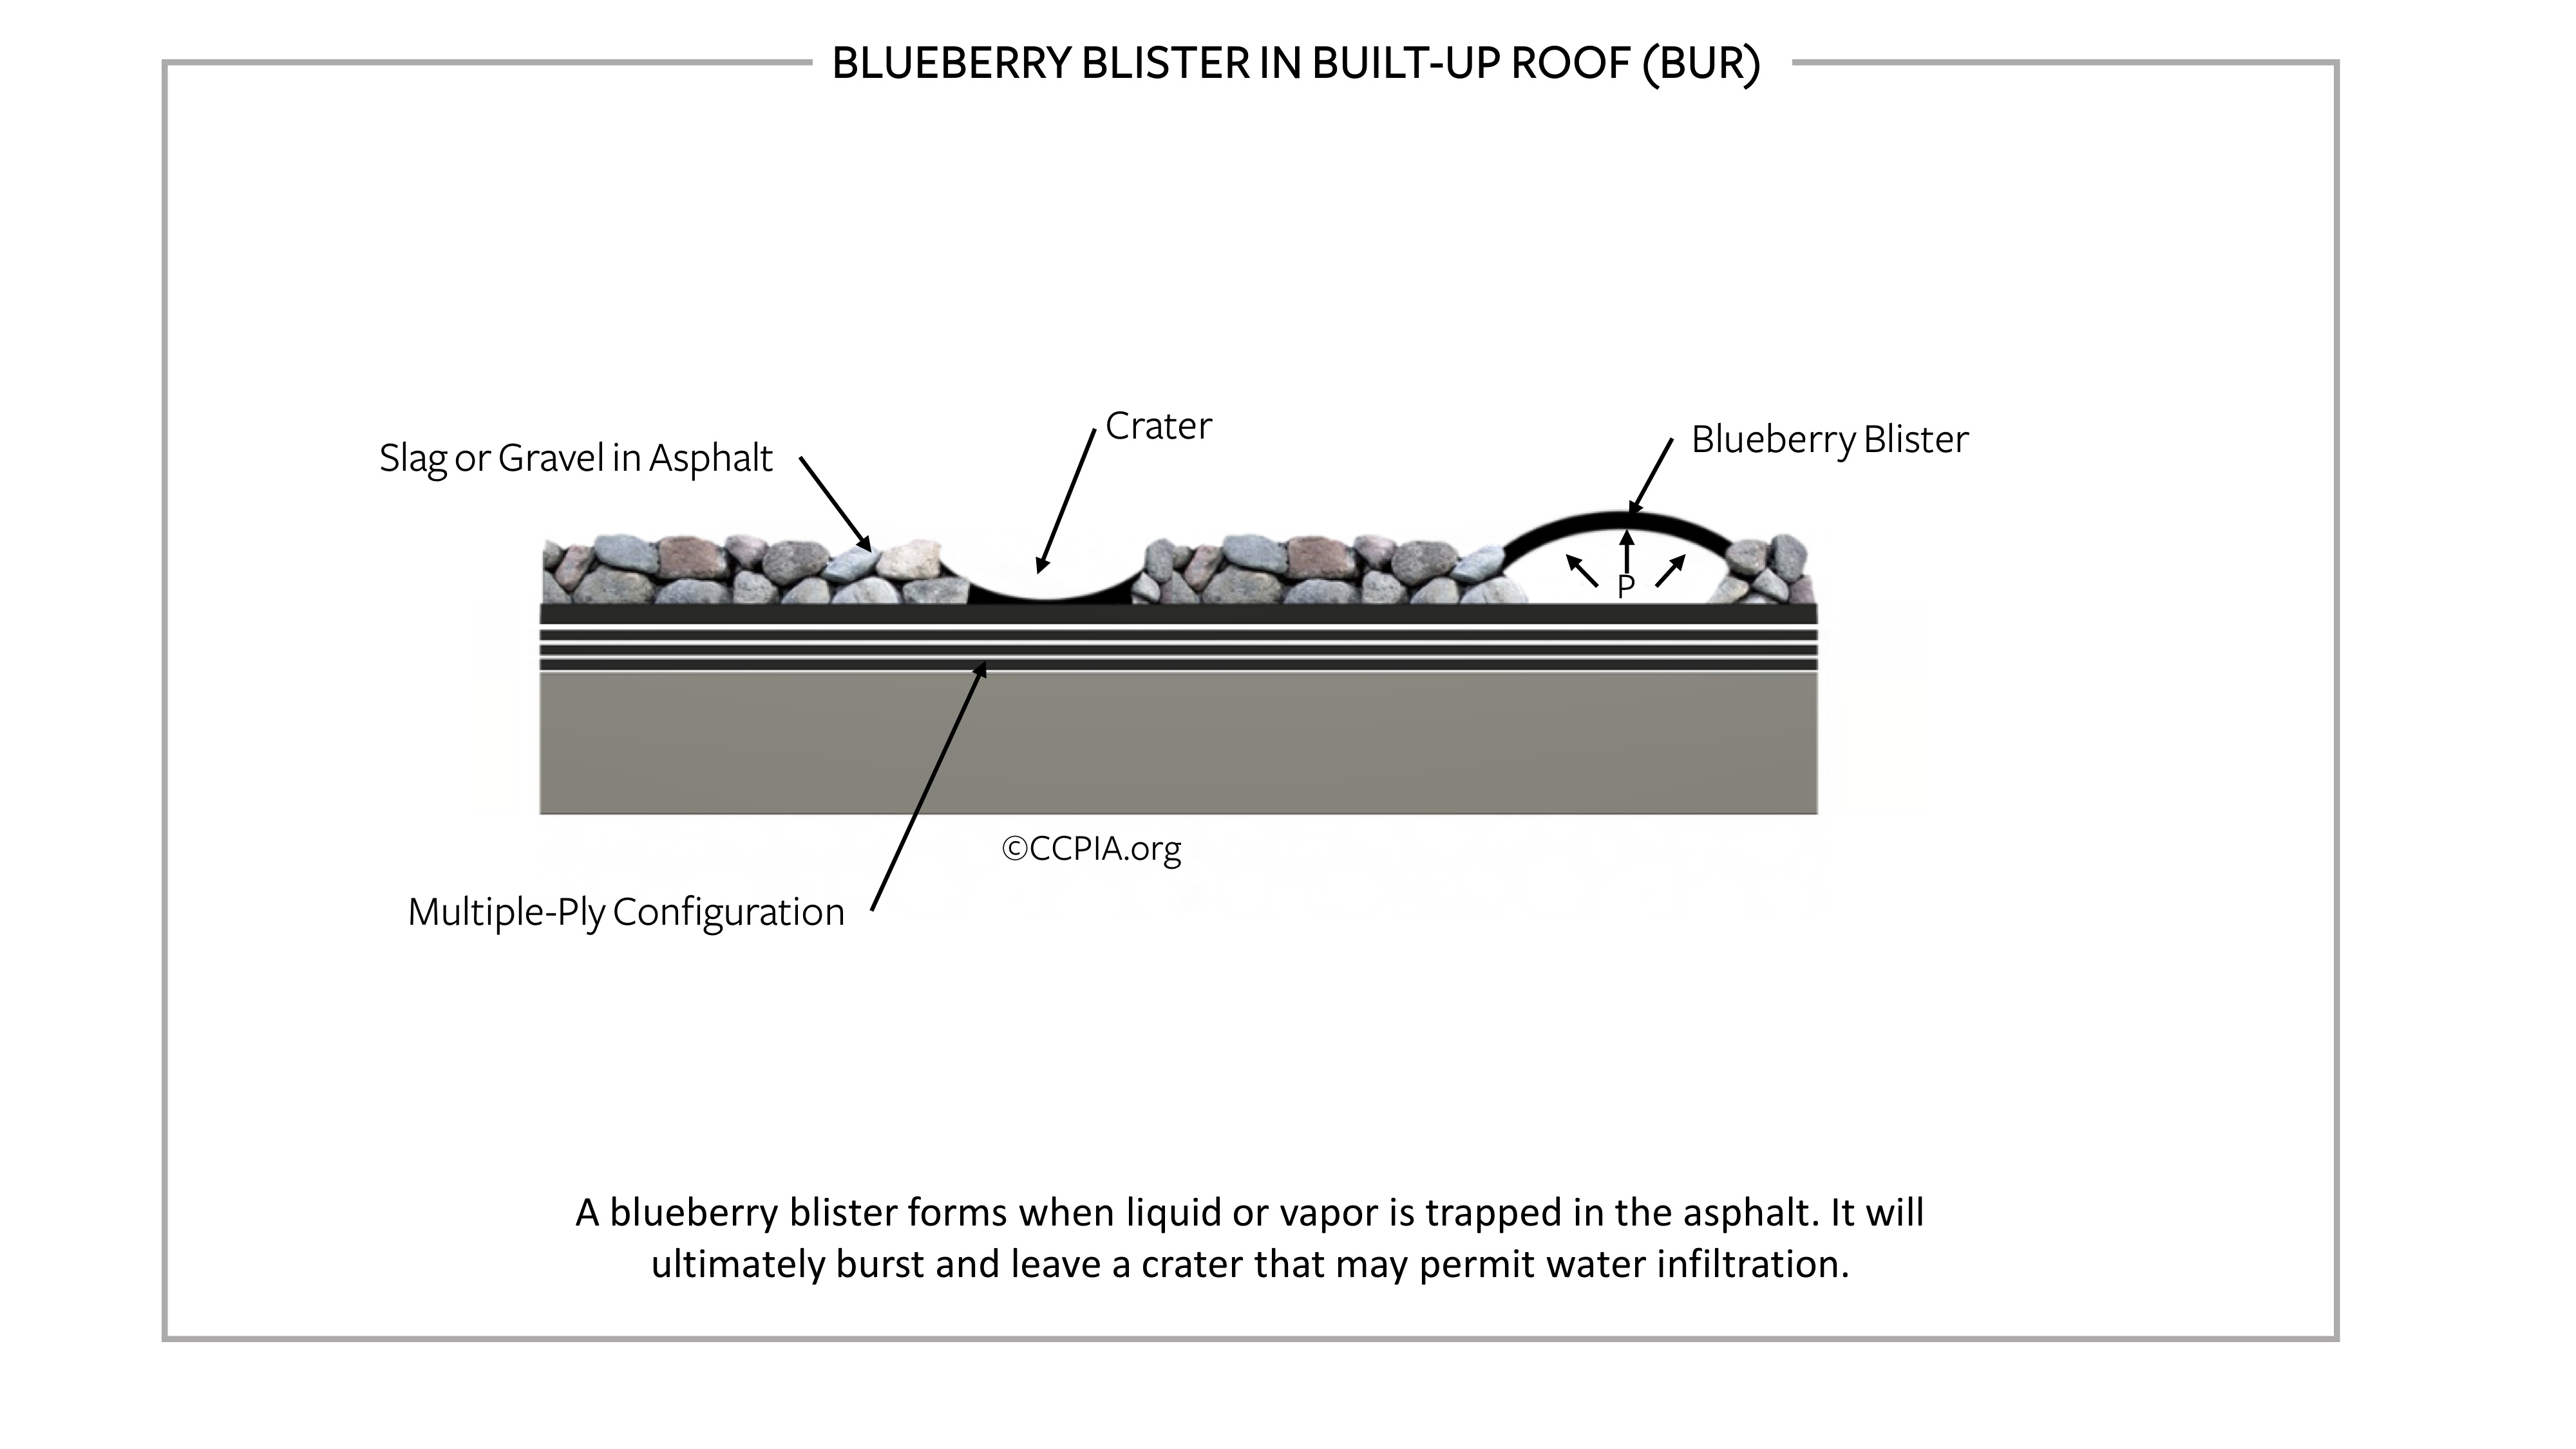 Blueberry blister in built-up roof (BUR).